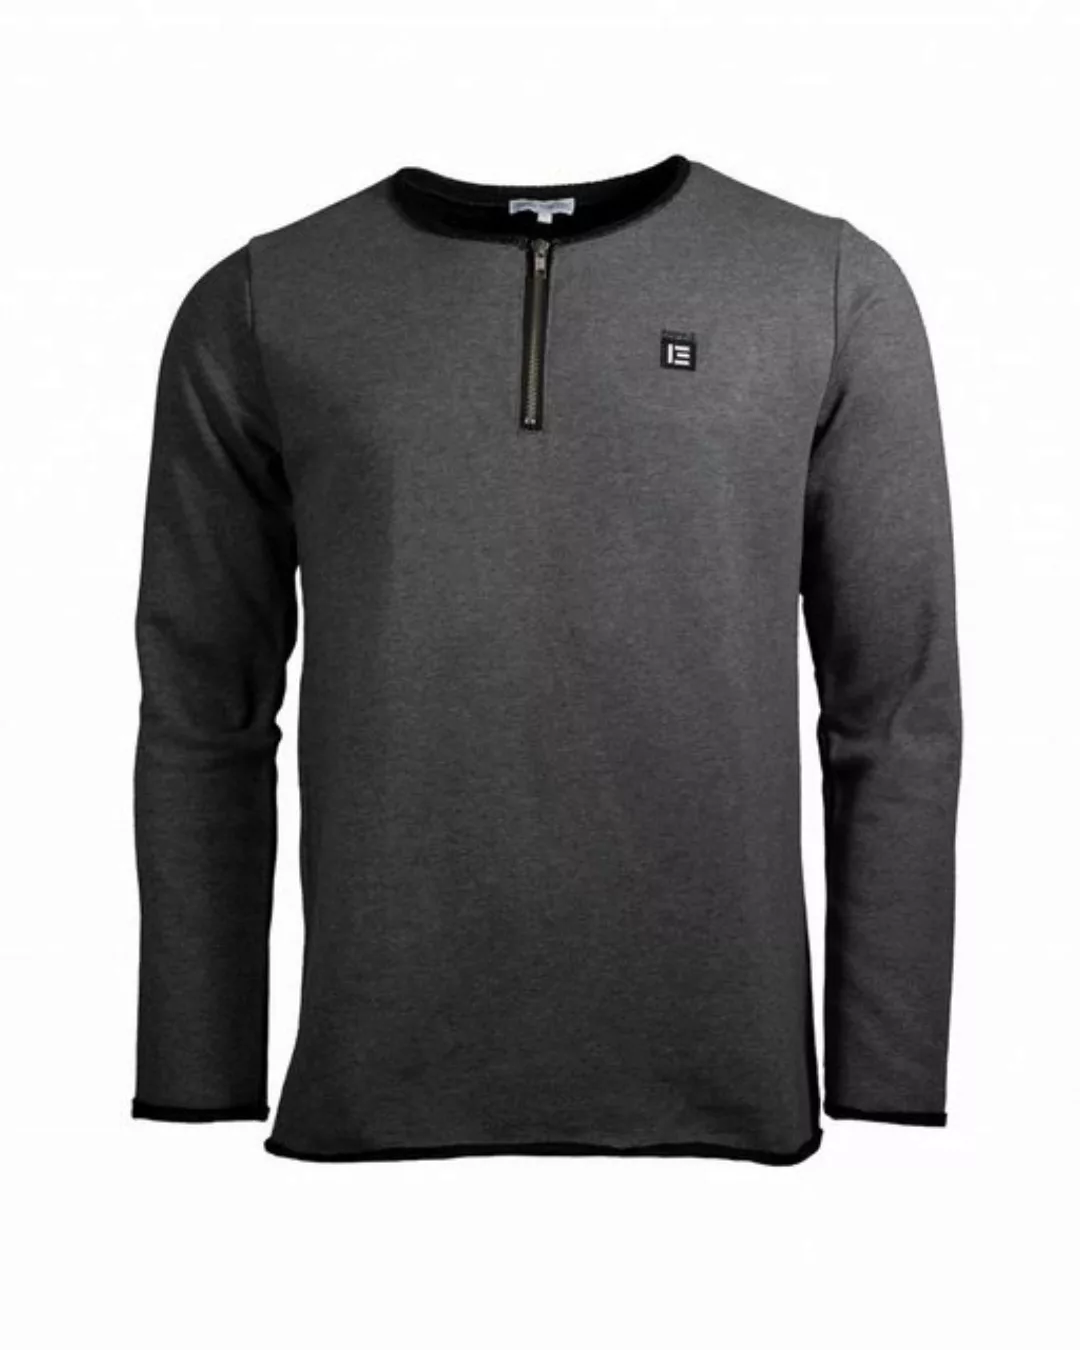 EMPIRE-THIRTEEN Sweater "EMPIRE" BASIC SWEATER MEN schwarzer Futterfaden günstig online kaufen